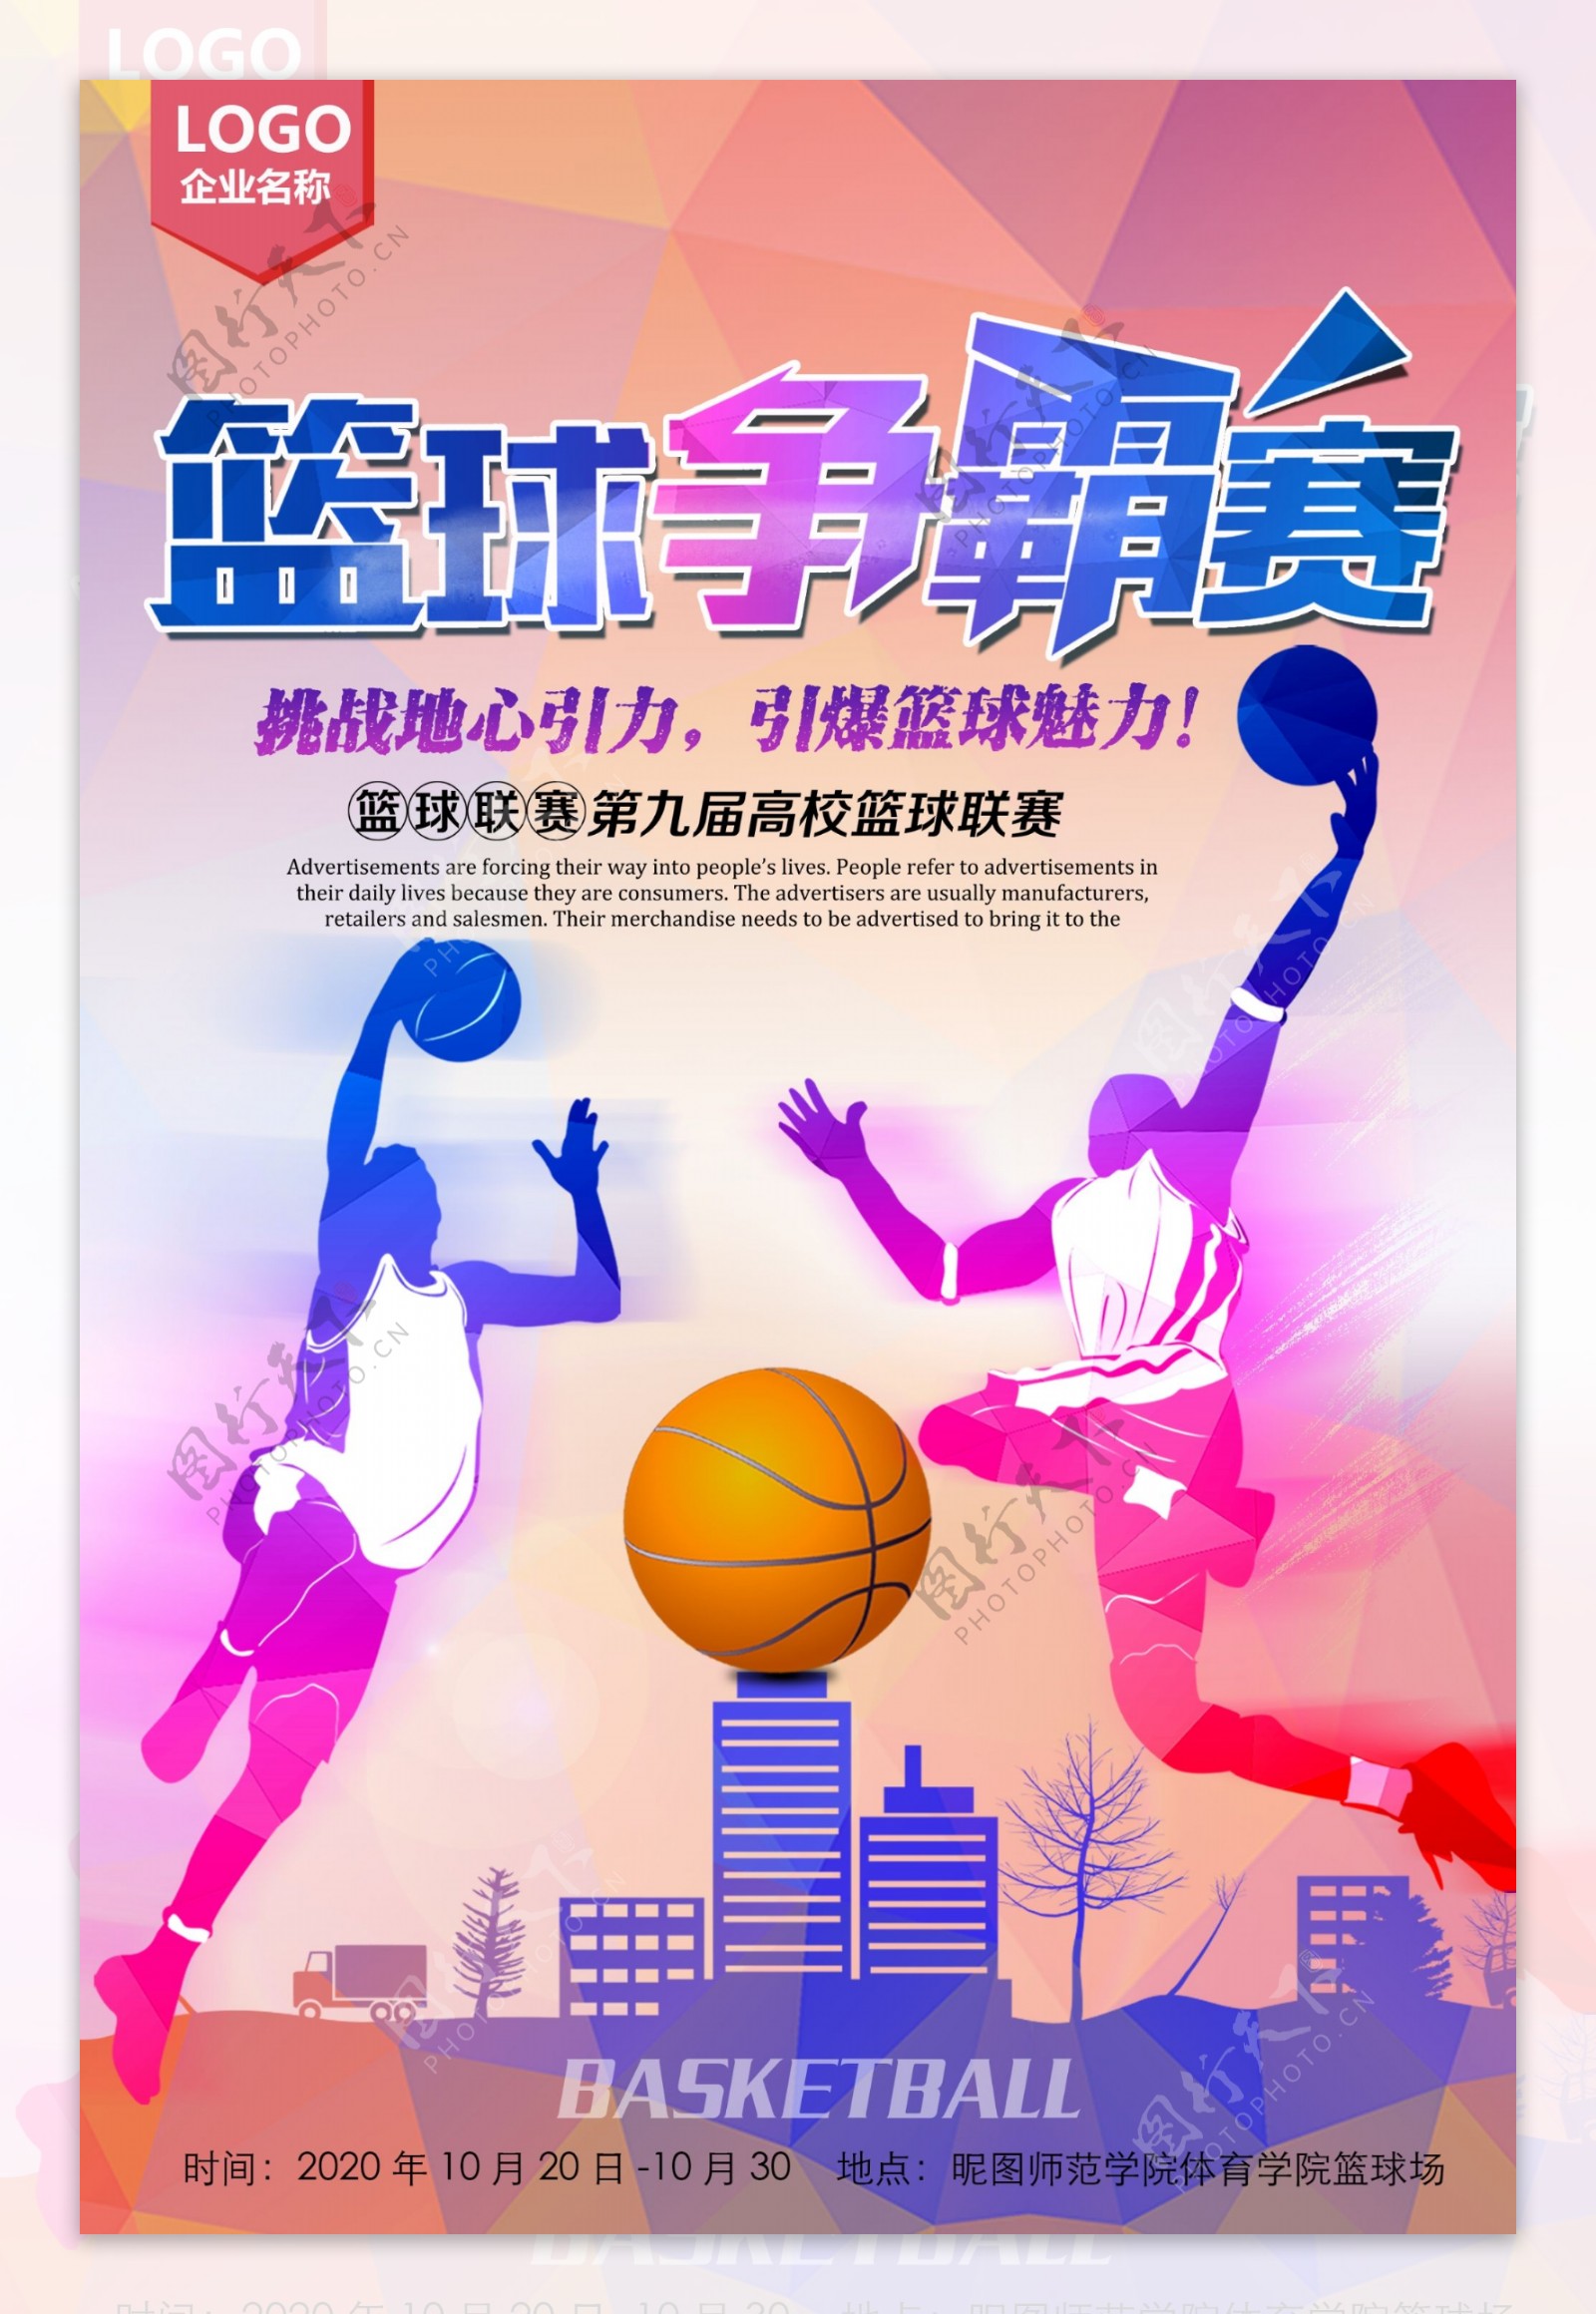 炫彩运动会篮球比赛海报设计素材